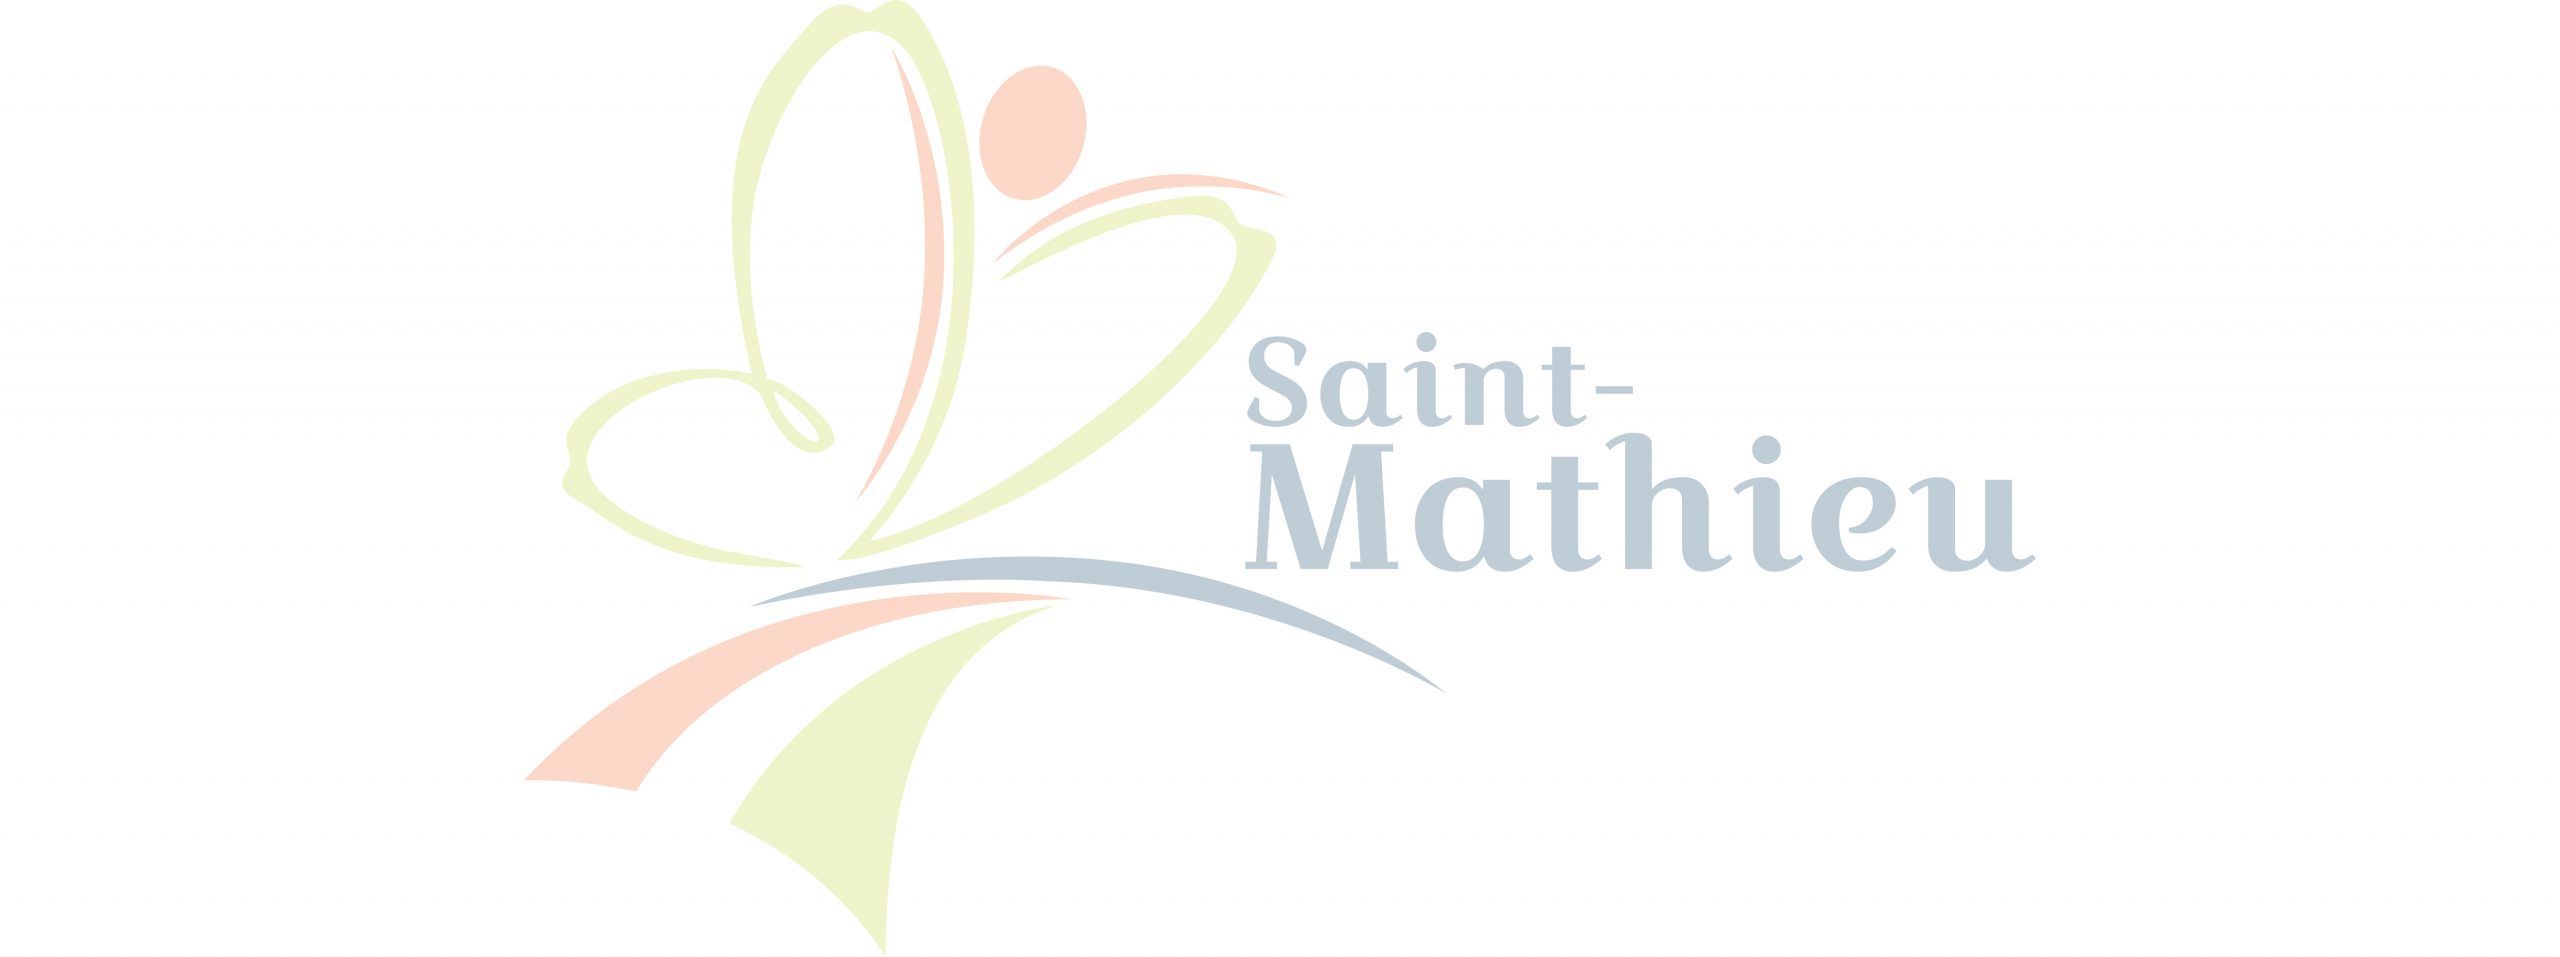 Arrivée prochaine de plusieurs grandes bannières commerciales – parc d’affaires de Saint-Mathieu